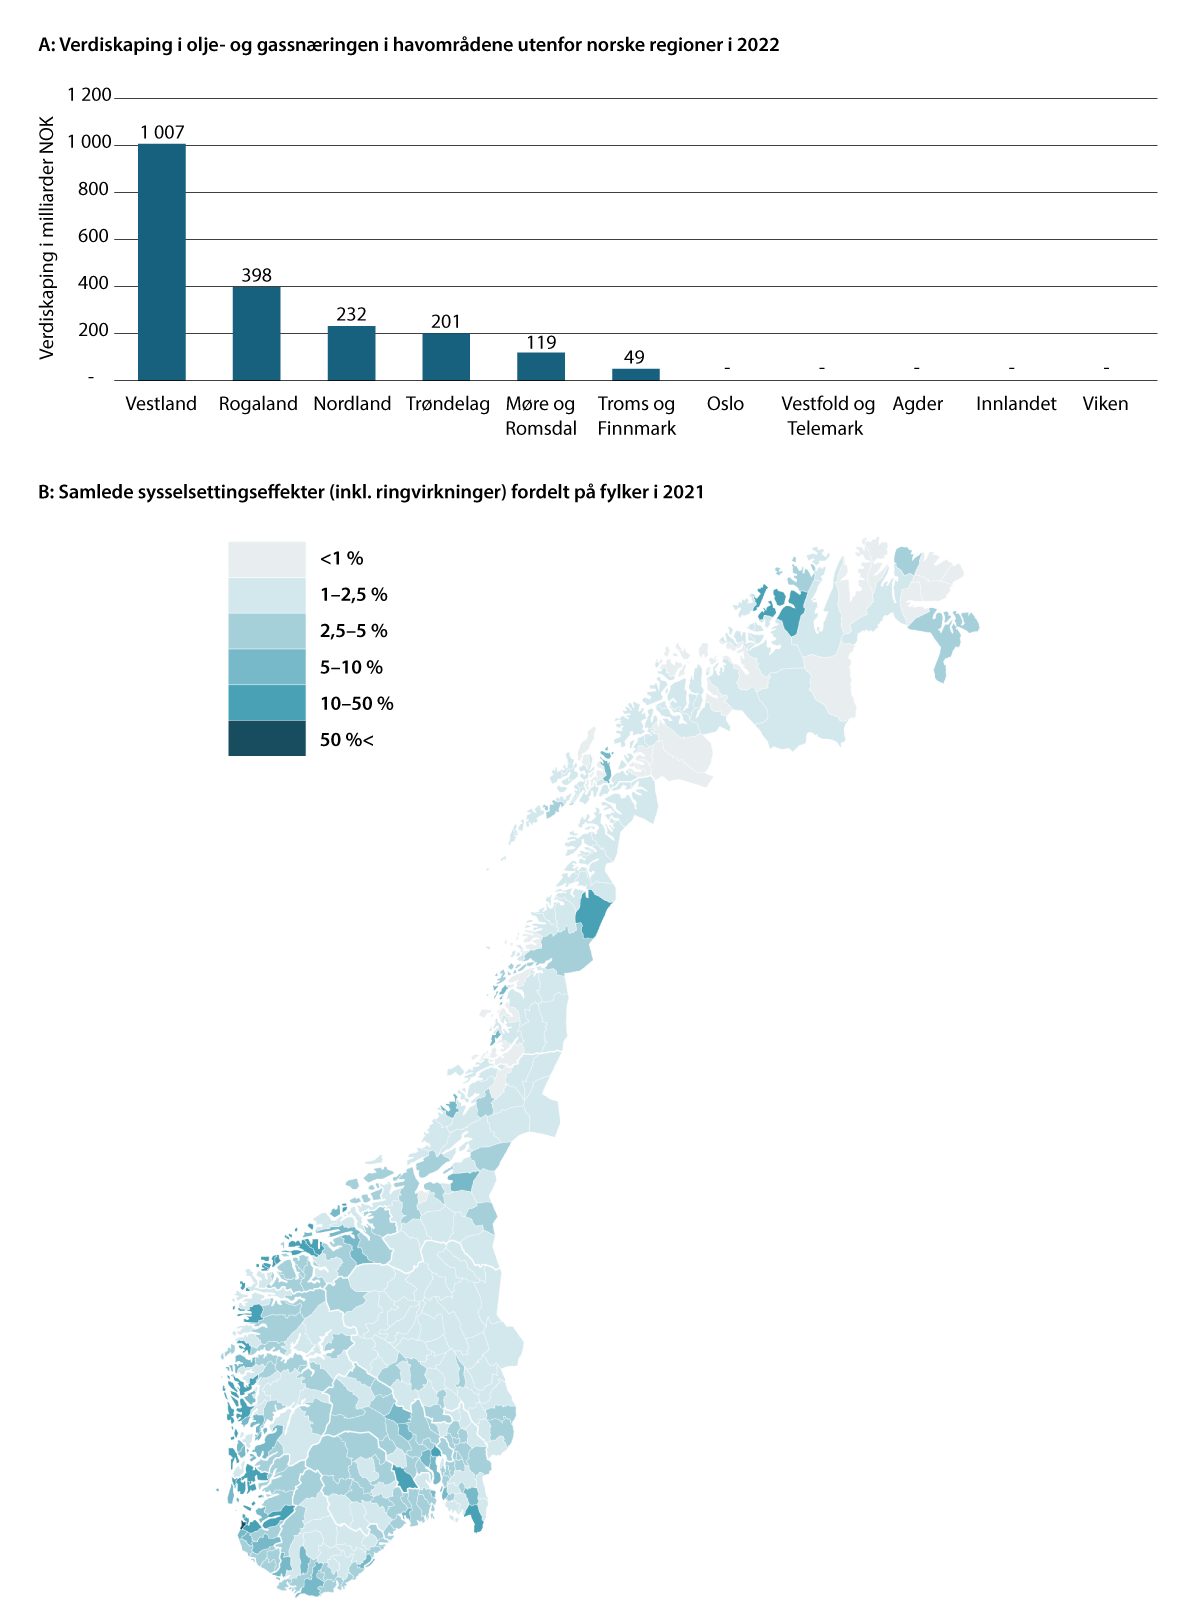 Figur 3.5 Verdiskaping i olje- og gassnæringen i havområdene utenfor norske regioner i 2022